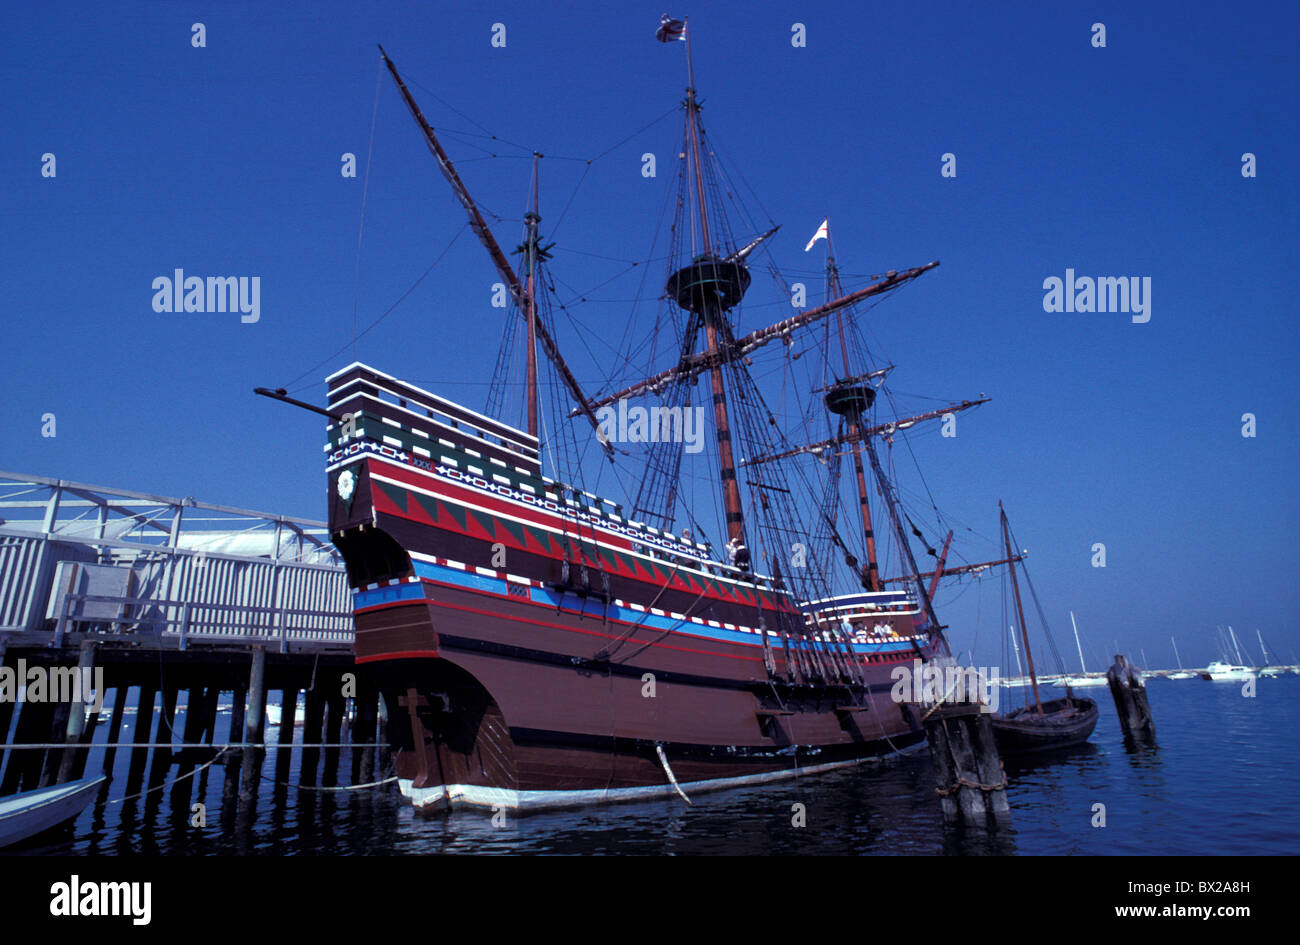 La copie de l'histoire de l'Amérique historique port d'immigrants Immigration Massachusetts Mayflower II Plym Banque D'Images